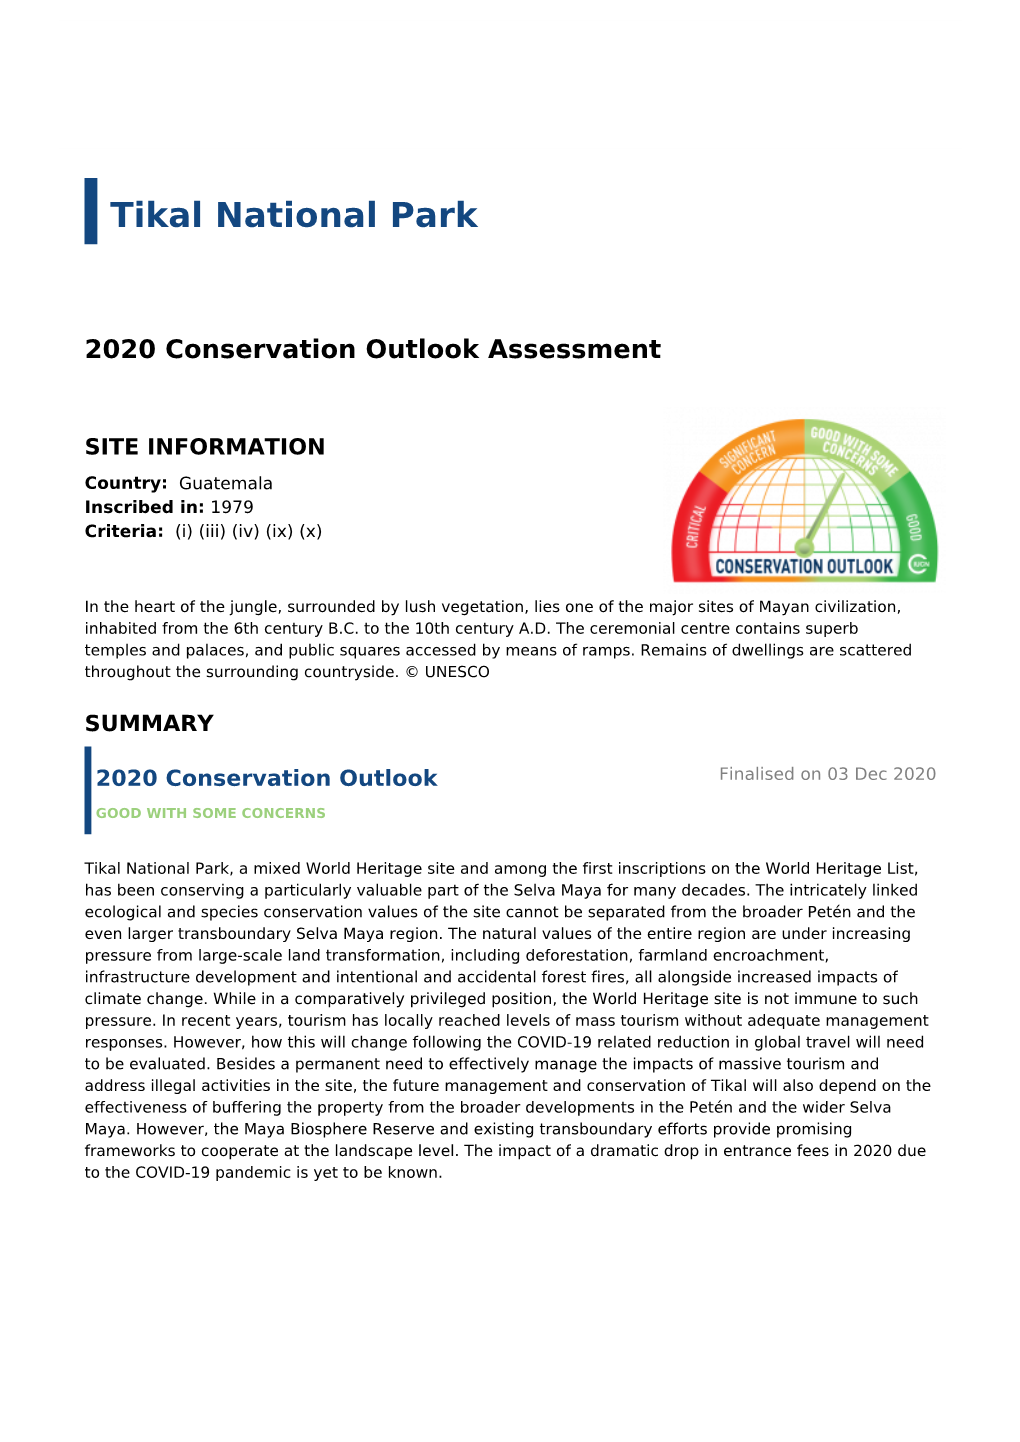 Tikal National Park - 2020 Conservation Outlook Assessment